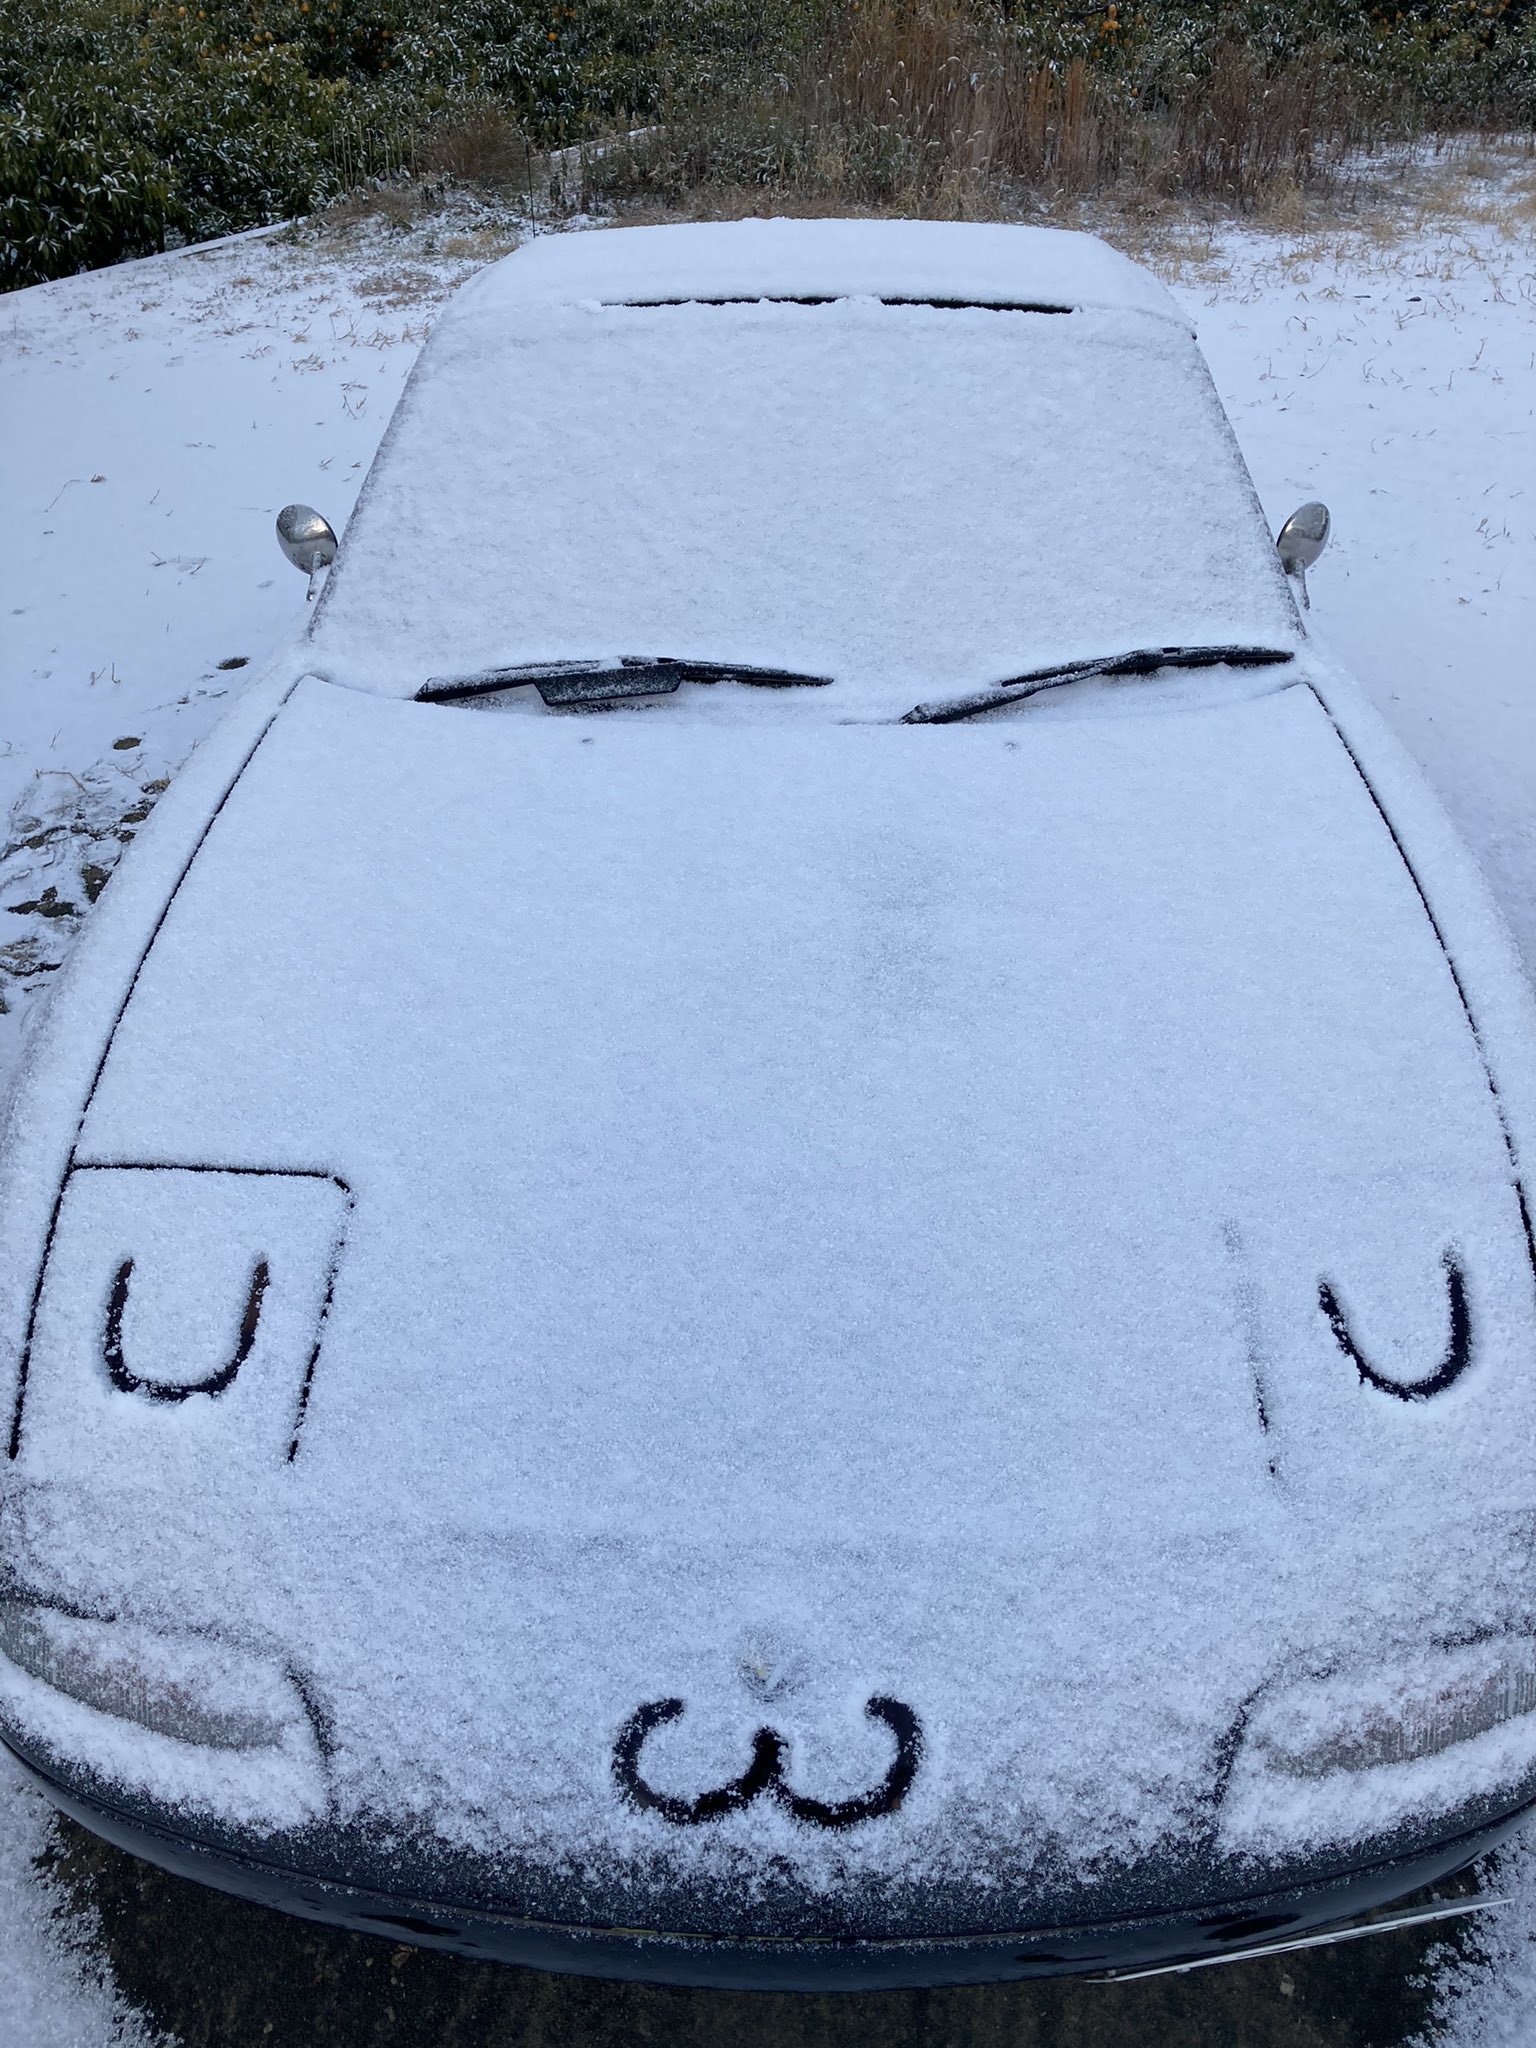 車のボンネットに積もった雪で作ったかわいい顔 話題の画像プラス